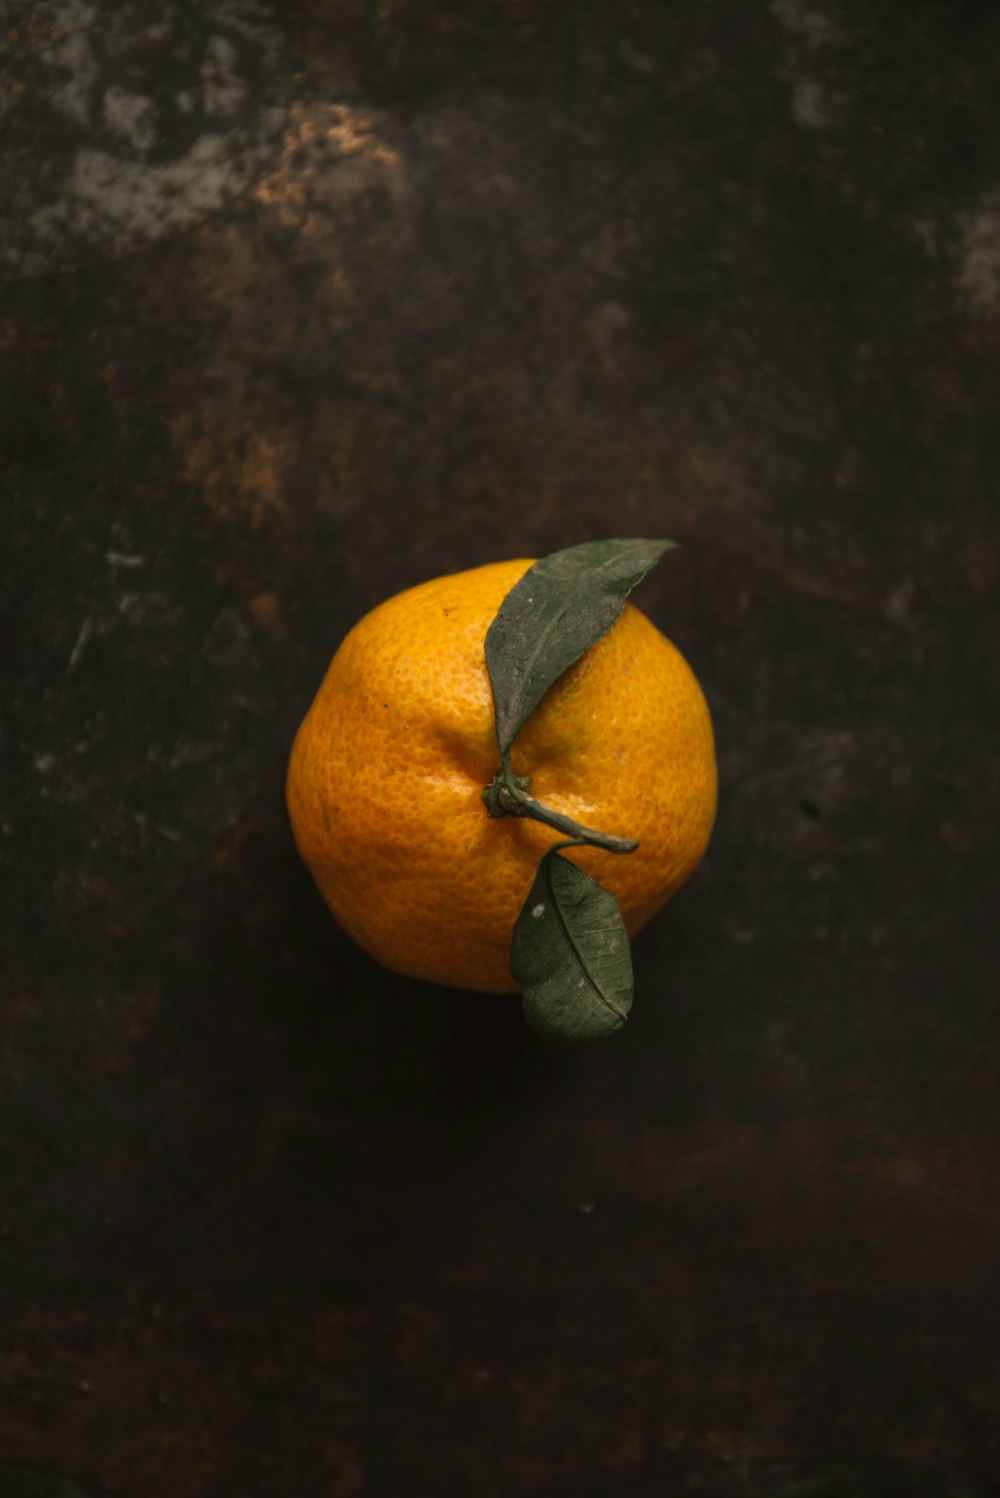 오렌지 과일